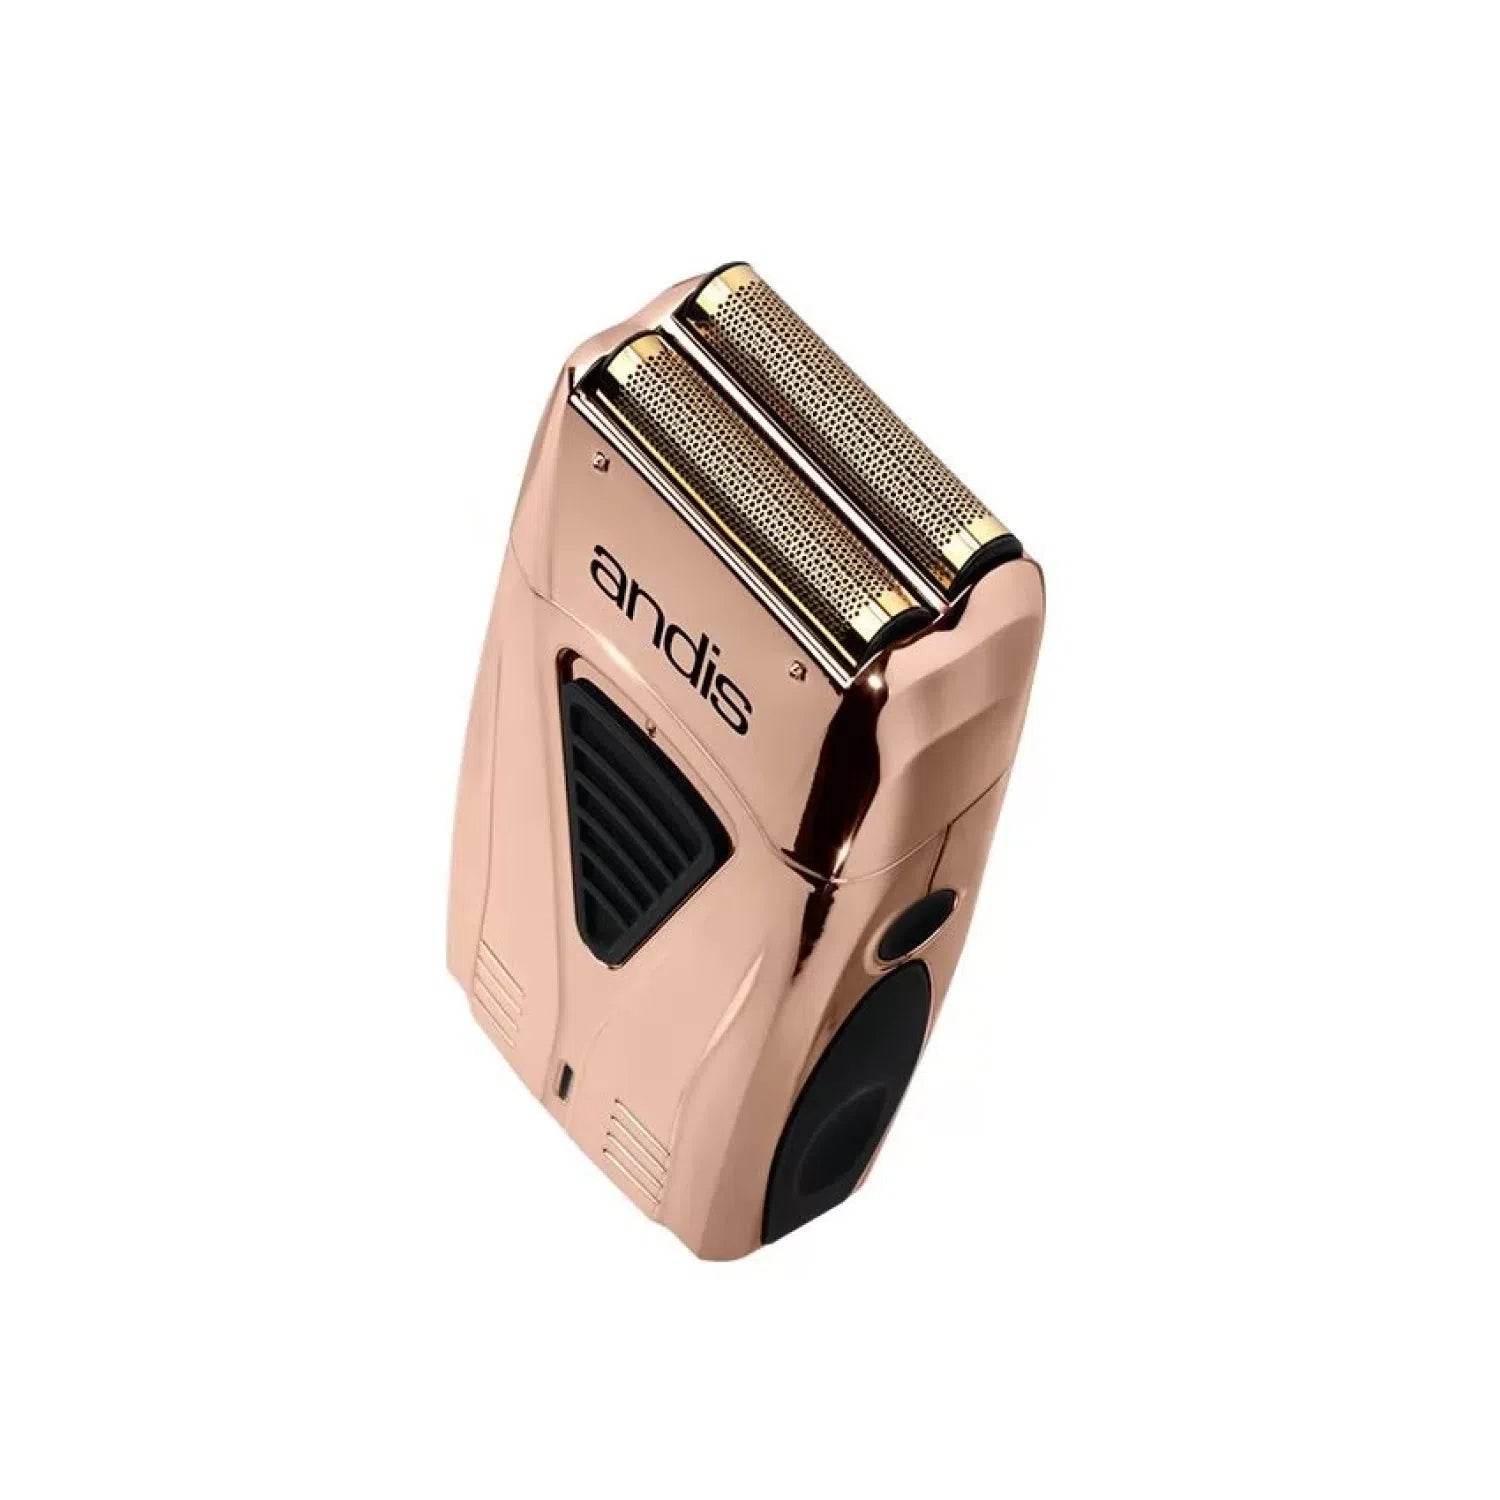 Шейвер Andis Pro Foil Lithium Plus Copper Shaver-AN 17225-Andis-Blade Runner Shop | Інтернет-магазин інструментів для перукарів (4)